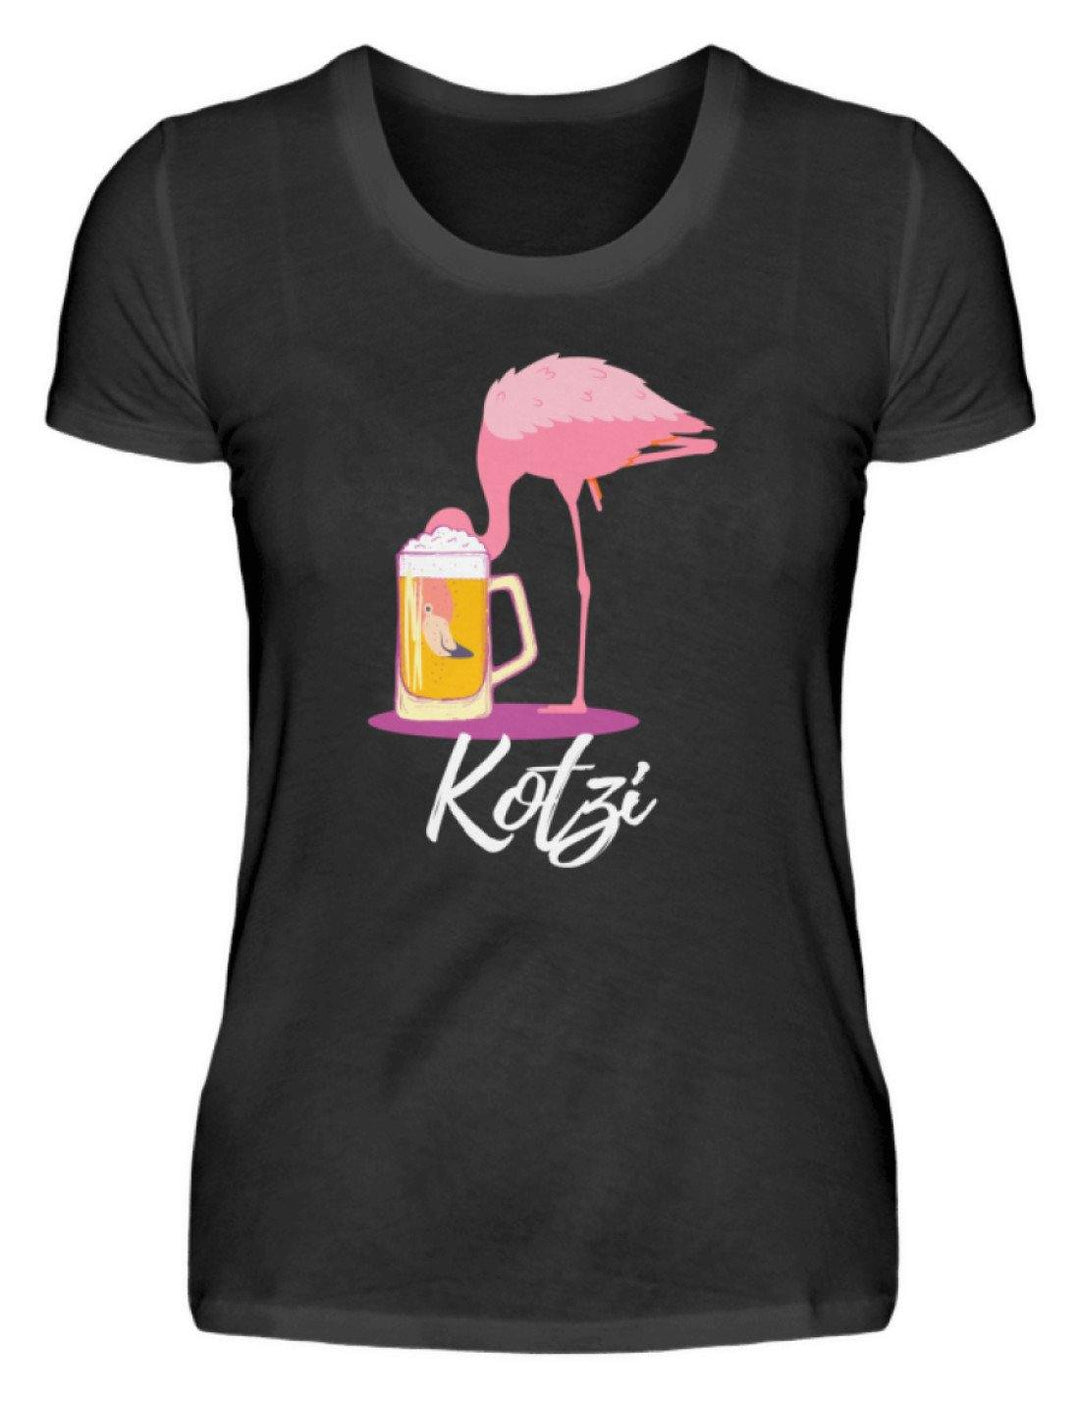 Flamingo Kotzi - Words on Shirt  - Damenshirt - Words on Shirts Sag es mit dem Mittelfinger Shirts Hoodies Sweatshirt Taschen Gymsack Spruch Sprüche Statement